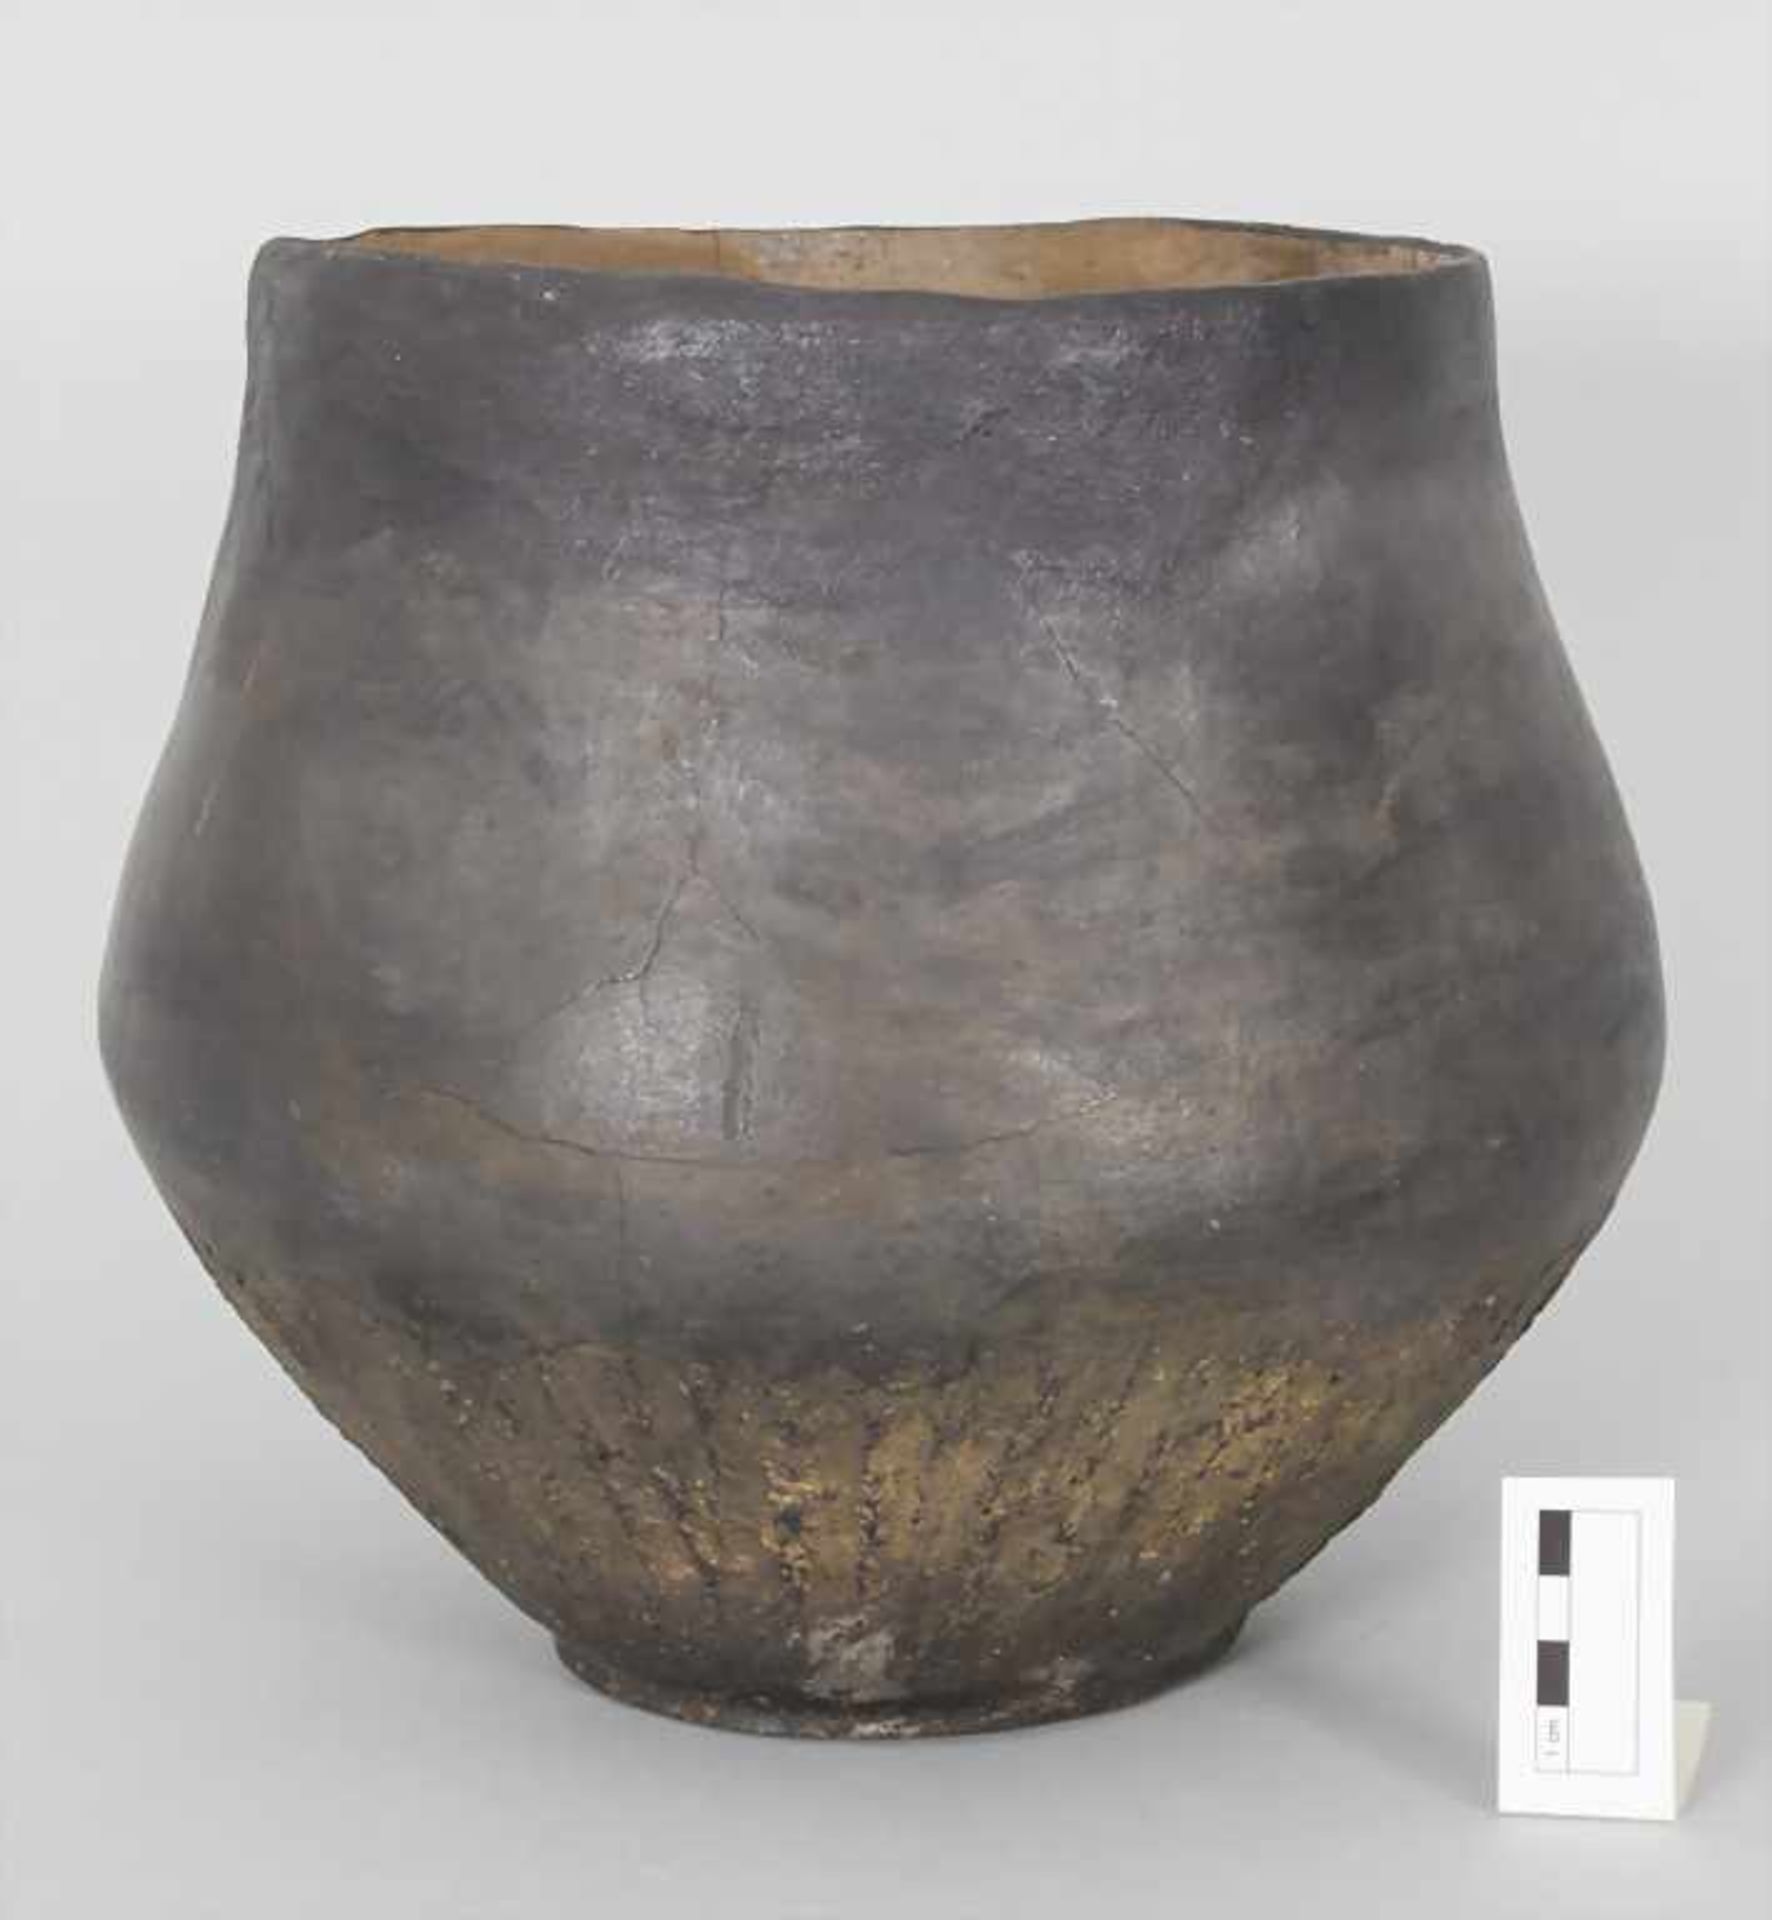 Bronzezeitliches Keramik-Gefäß / A Bronze Age ceramic vessel, Lausitzer Kultur, 9. - 6. Jh. v. Chr. - Bild 2 aus 6